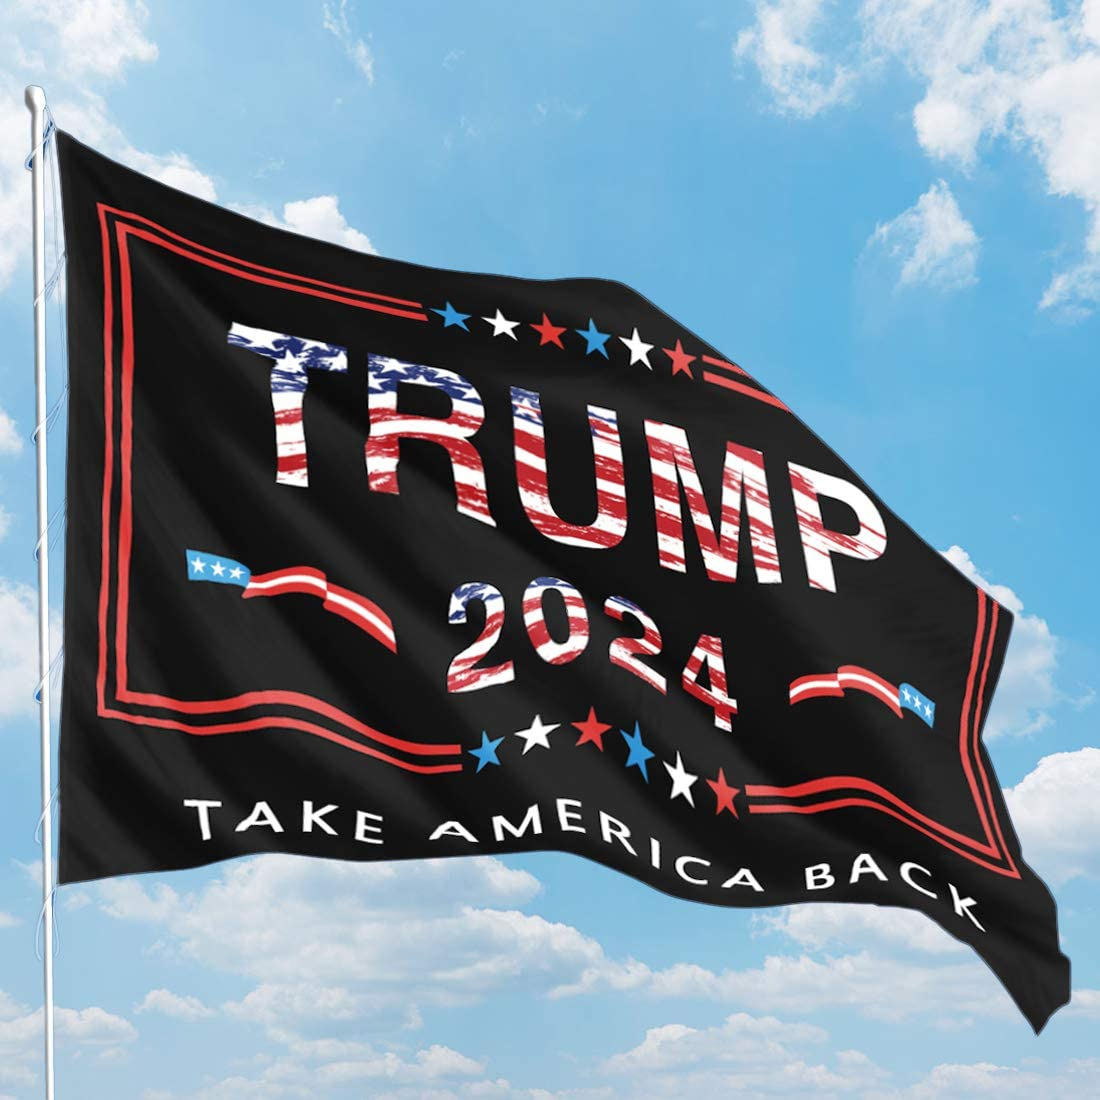 Where Can I Buy A Trump Flag